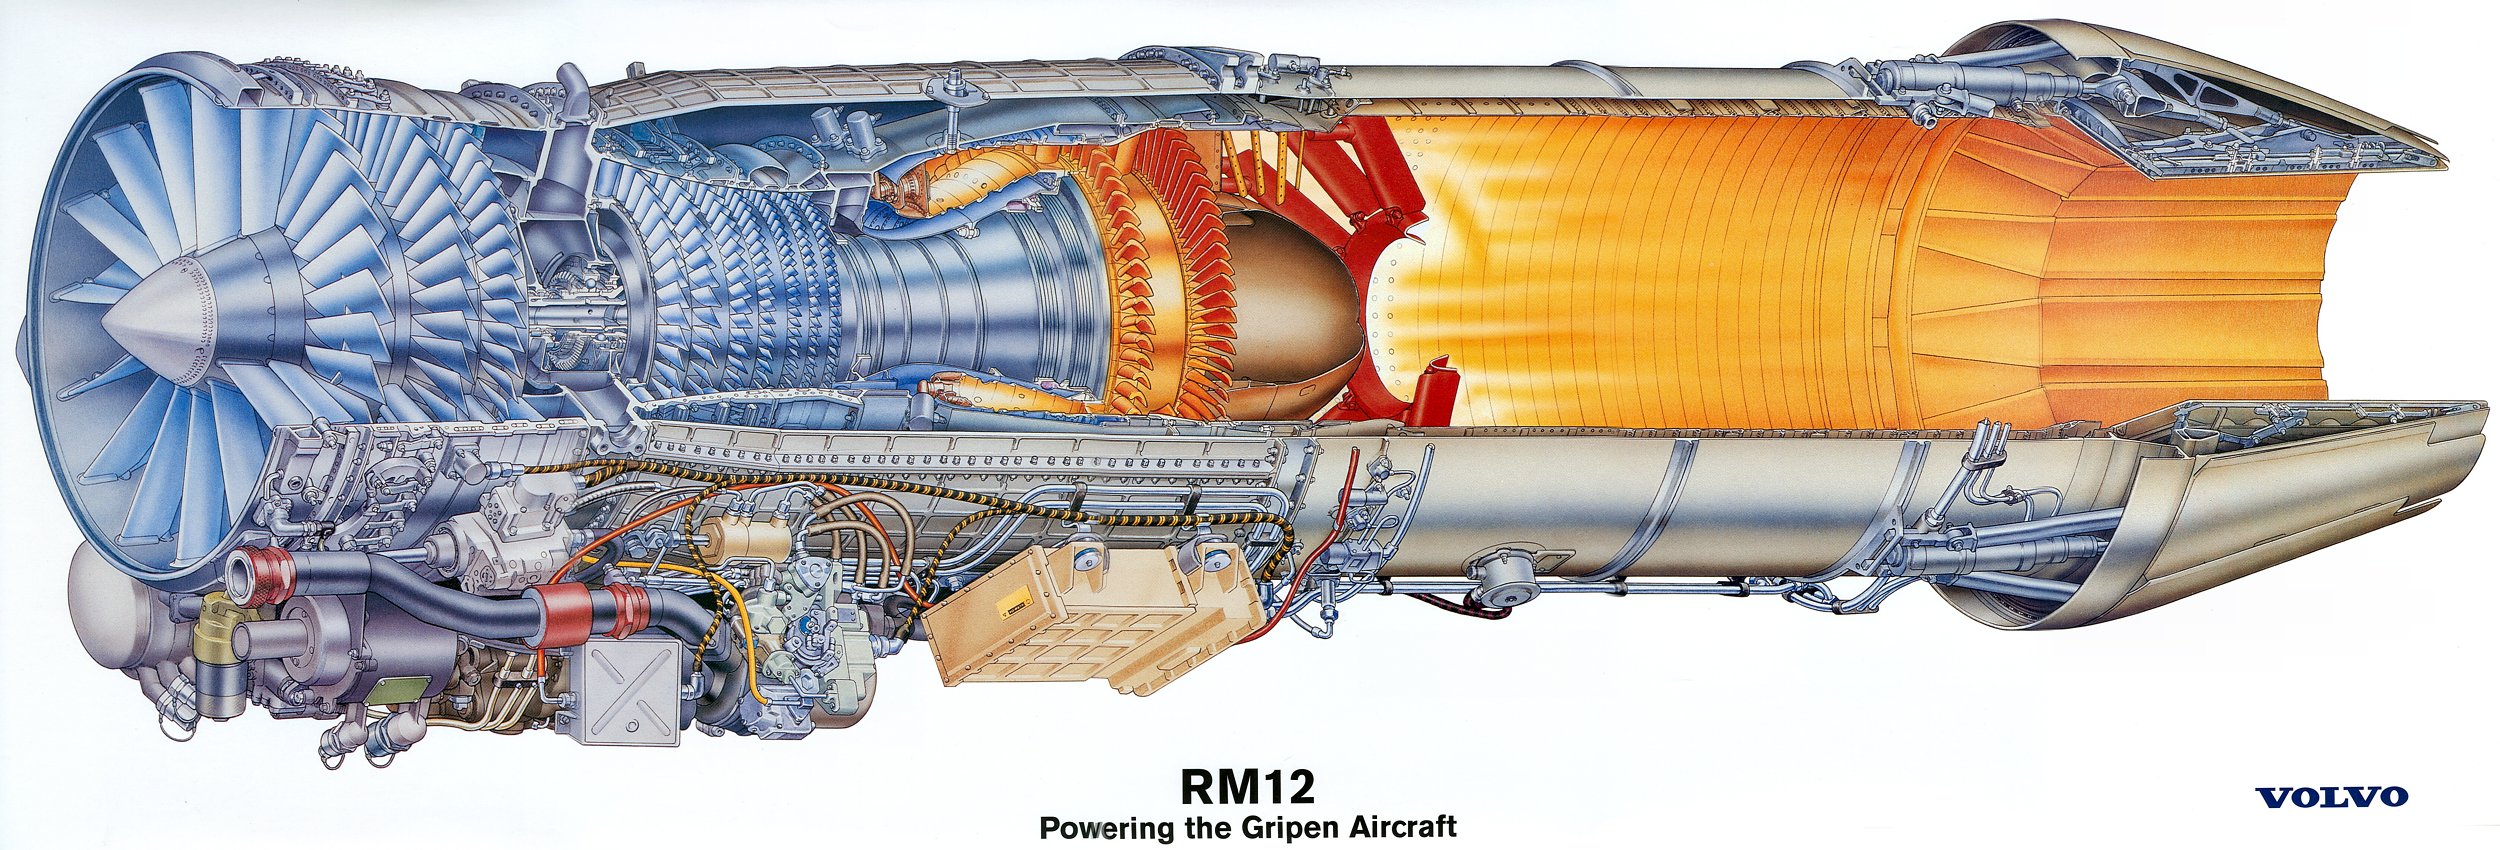 三,涡桨发动机不同于涡喷与涡扇发动机依靠排气产生推力,涡桨发动机